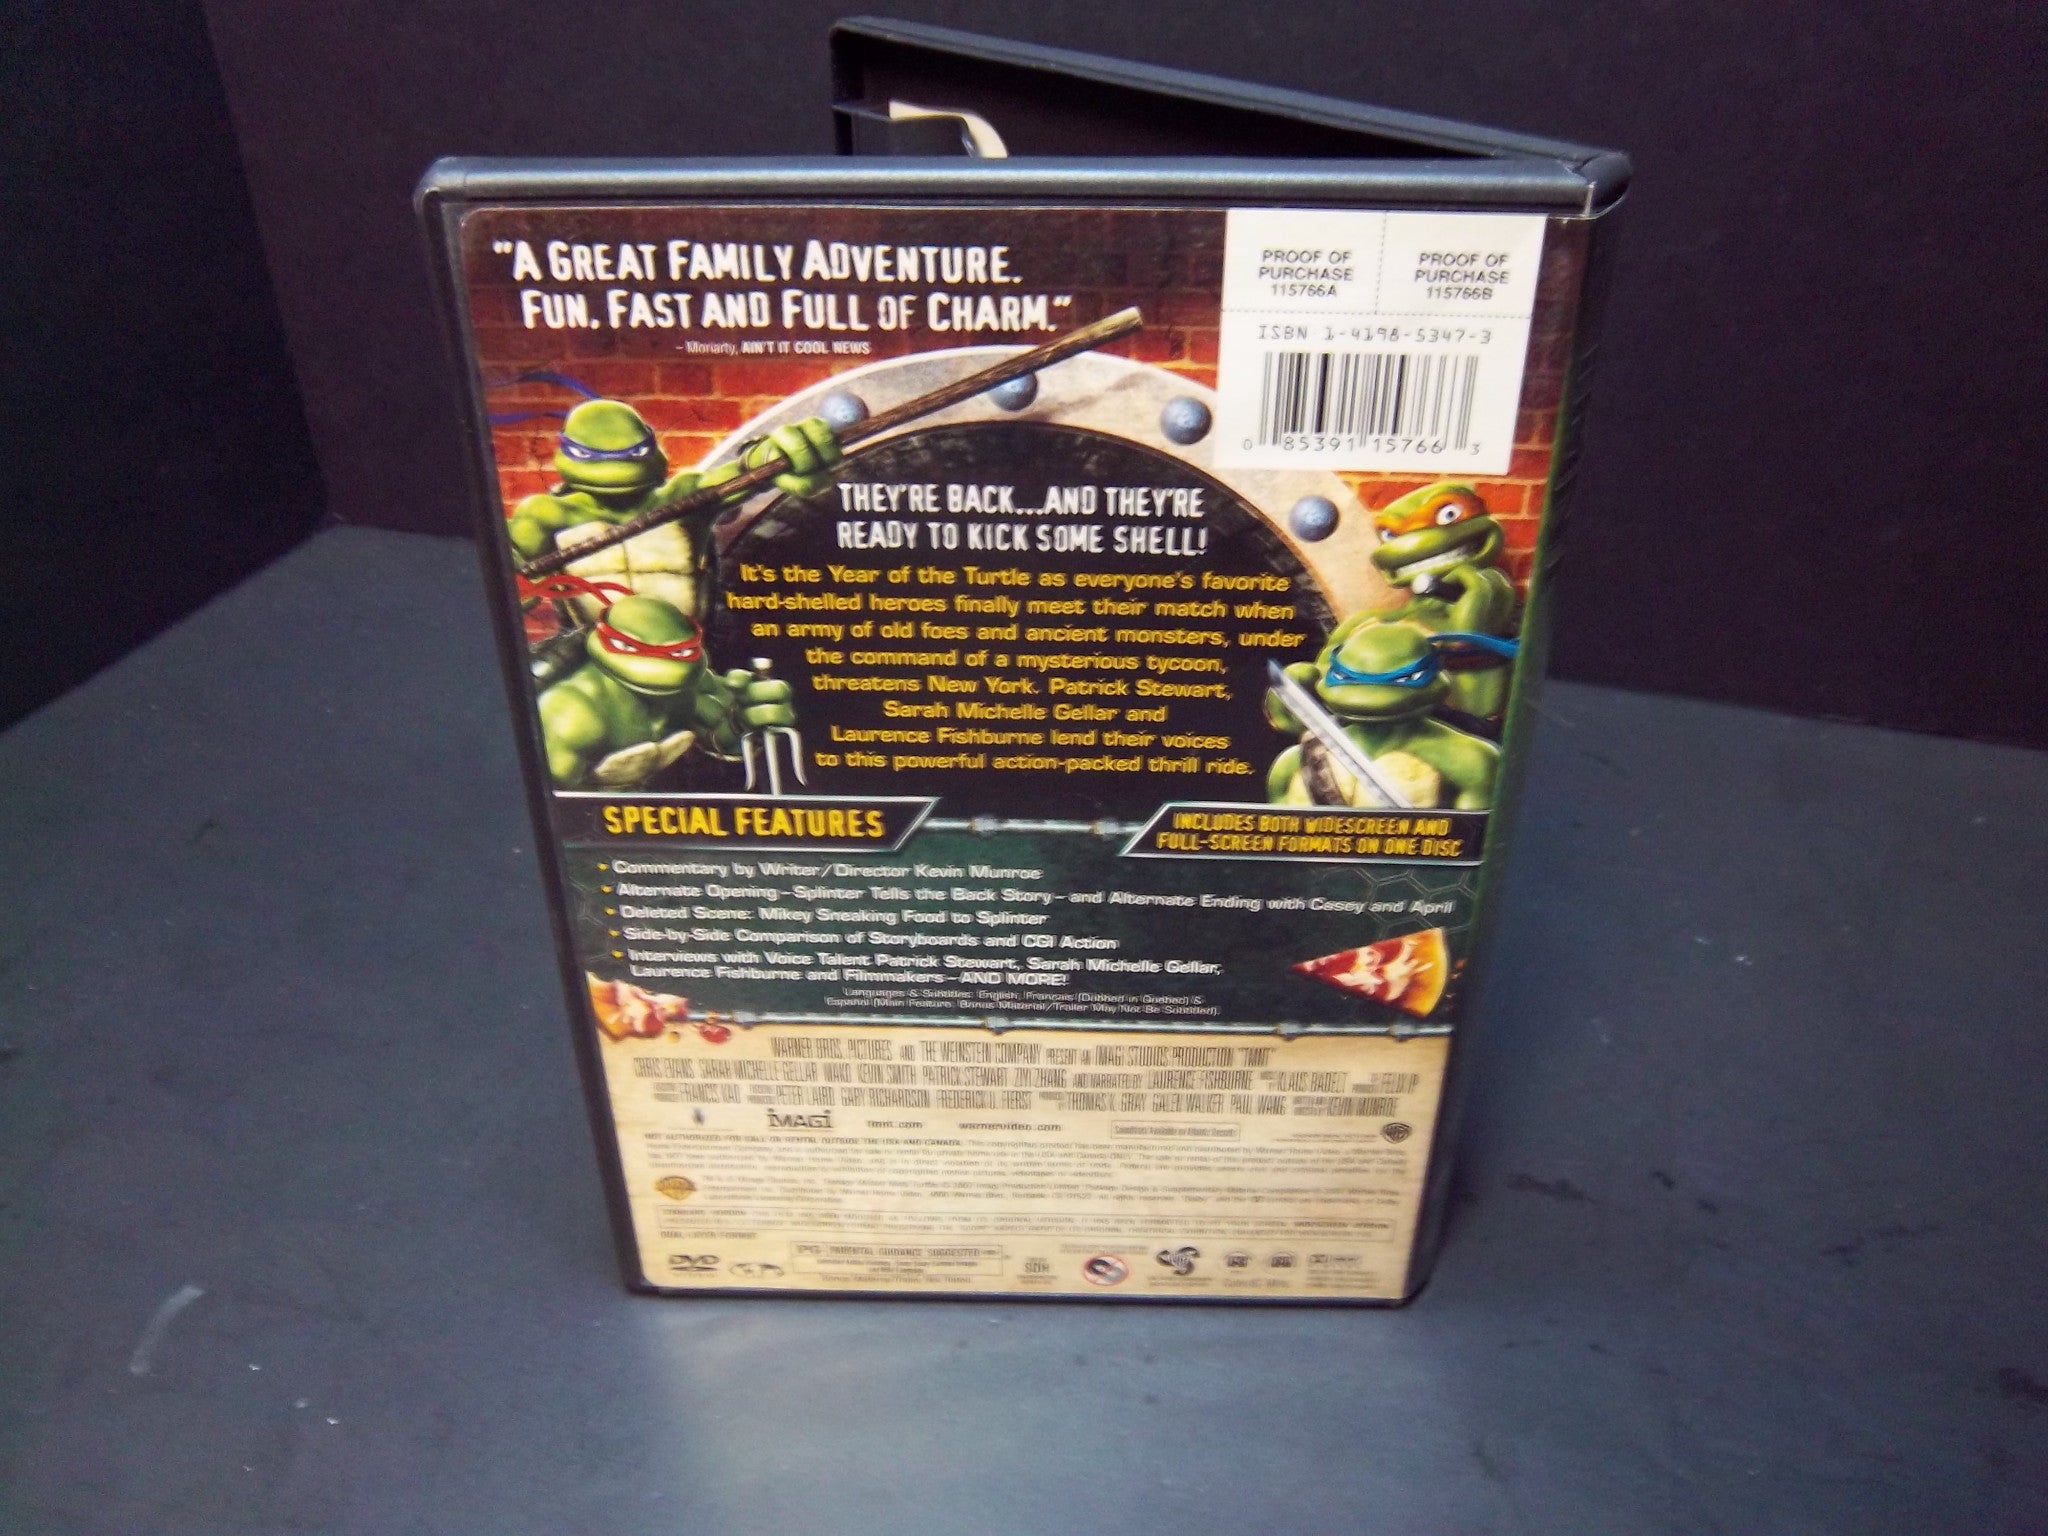 TMNT Widescreen & Fullscreen[DVD]